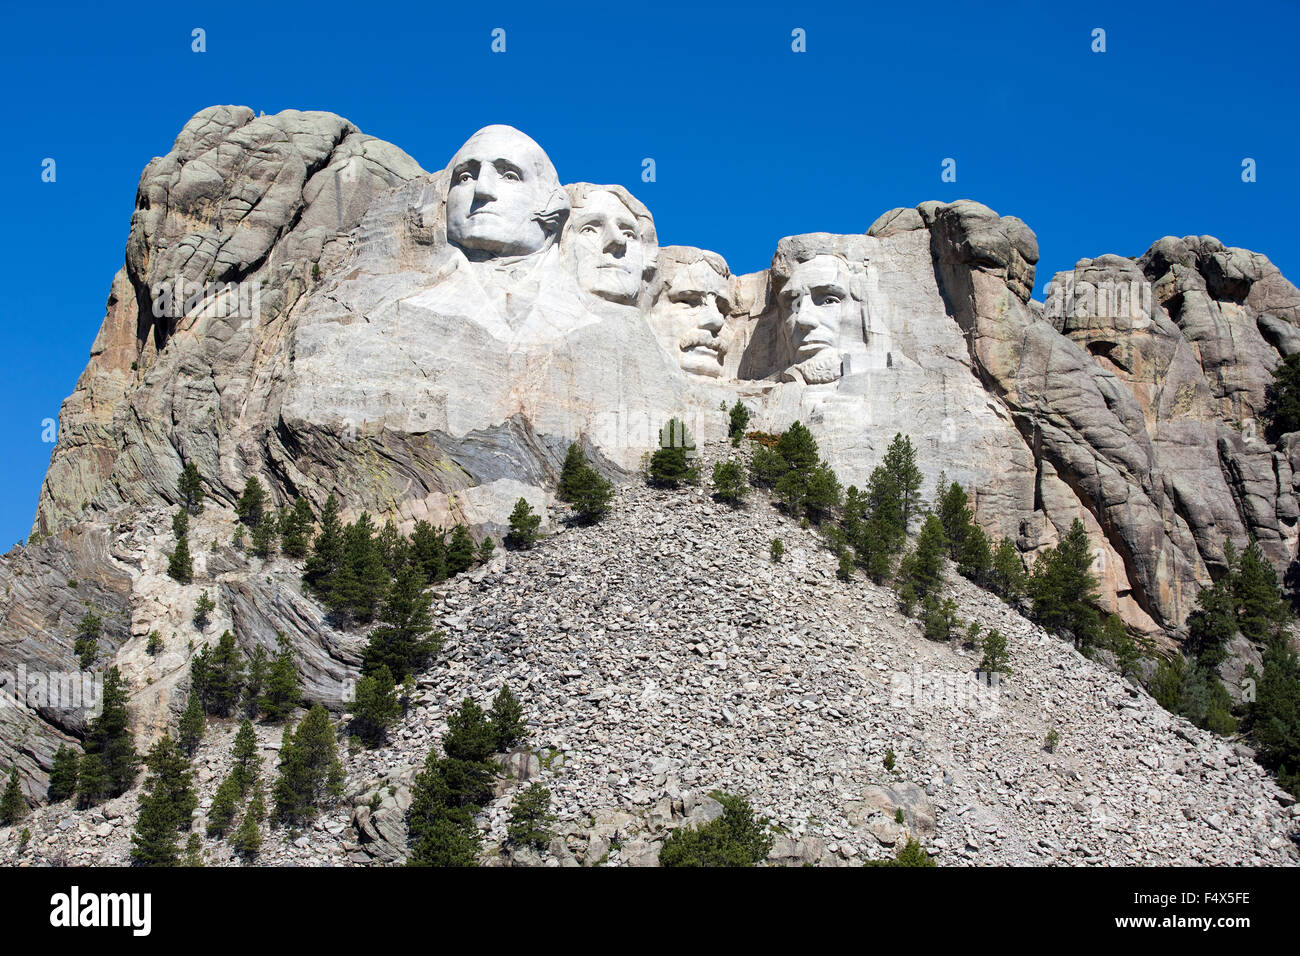 Mount Rushmore National Memorial è situato nella zona sud ovest di Dakota del Sud, Stati Uniti d'America. Foto Stock